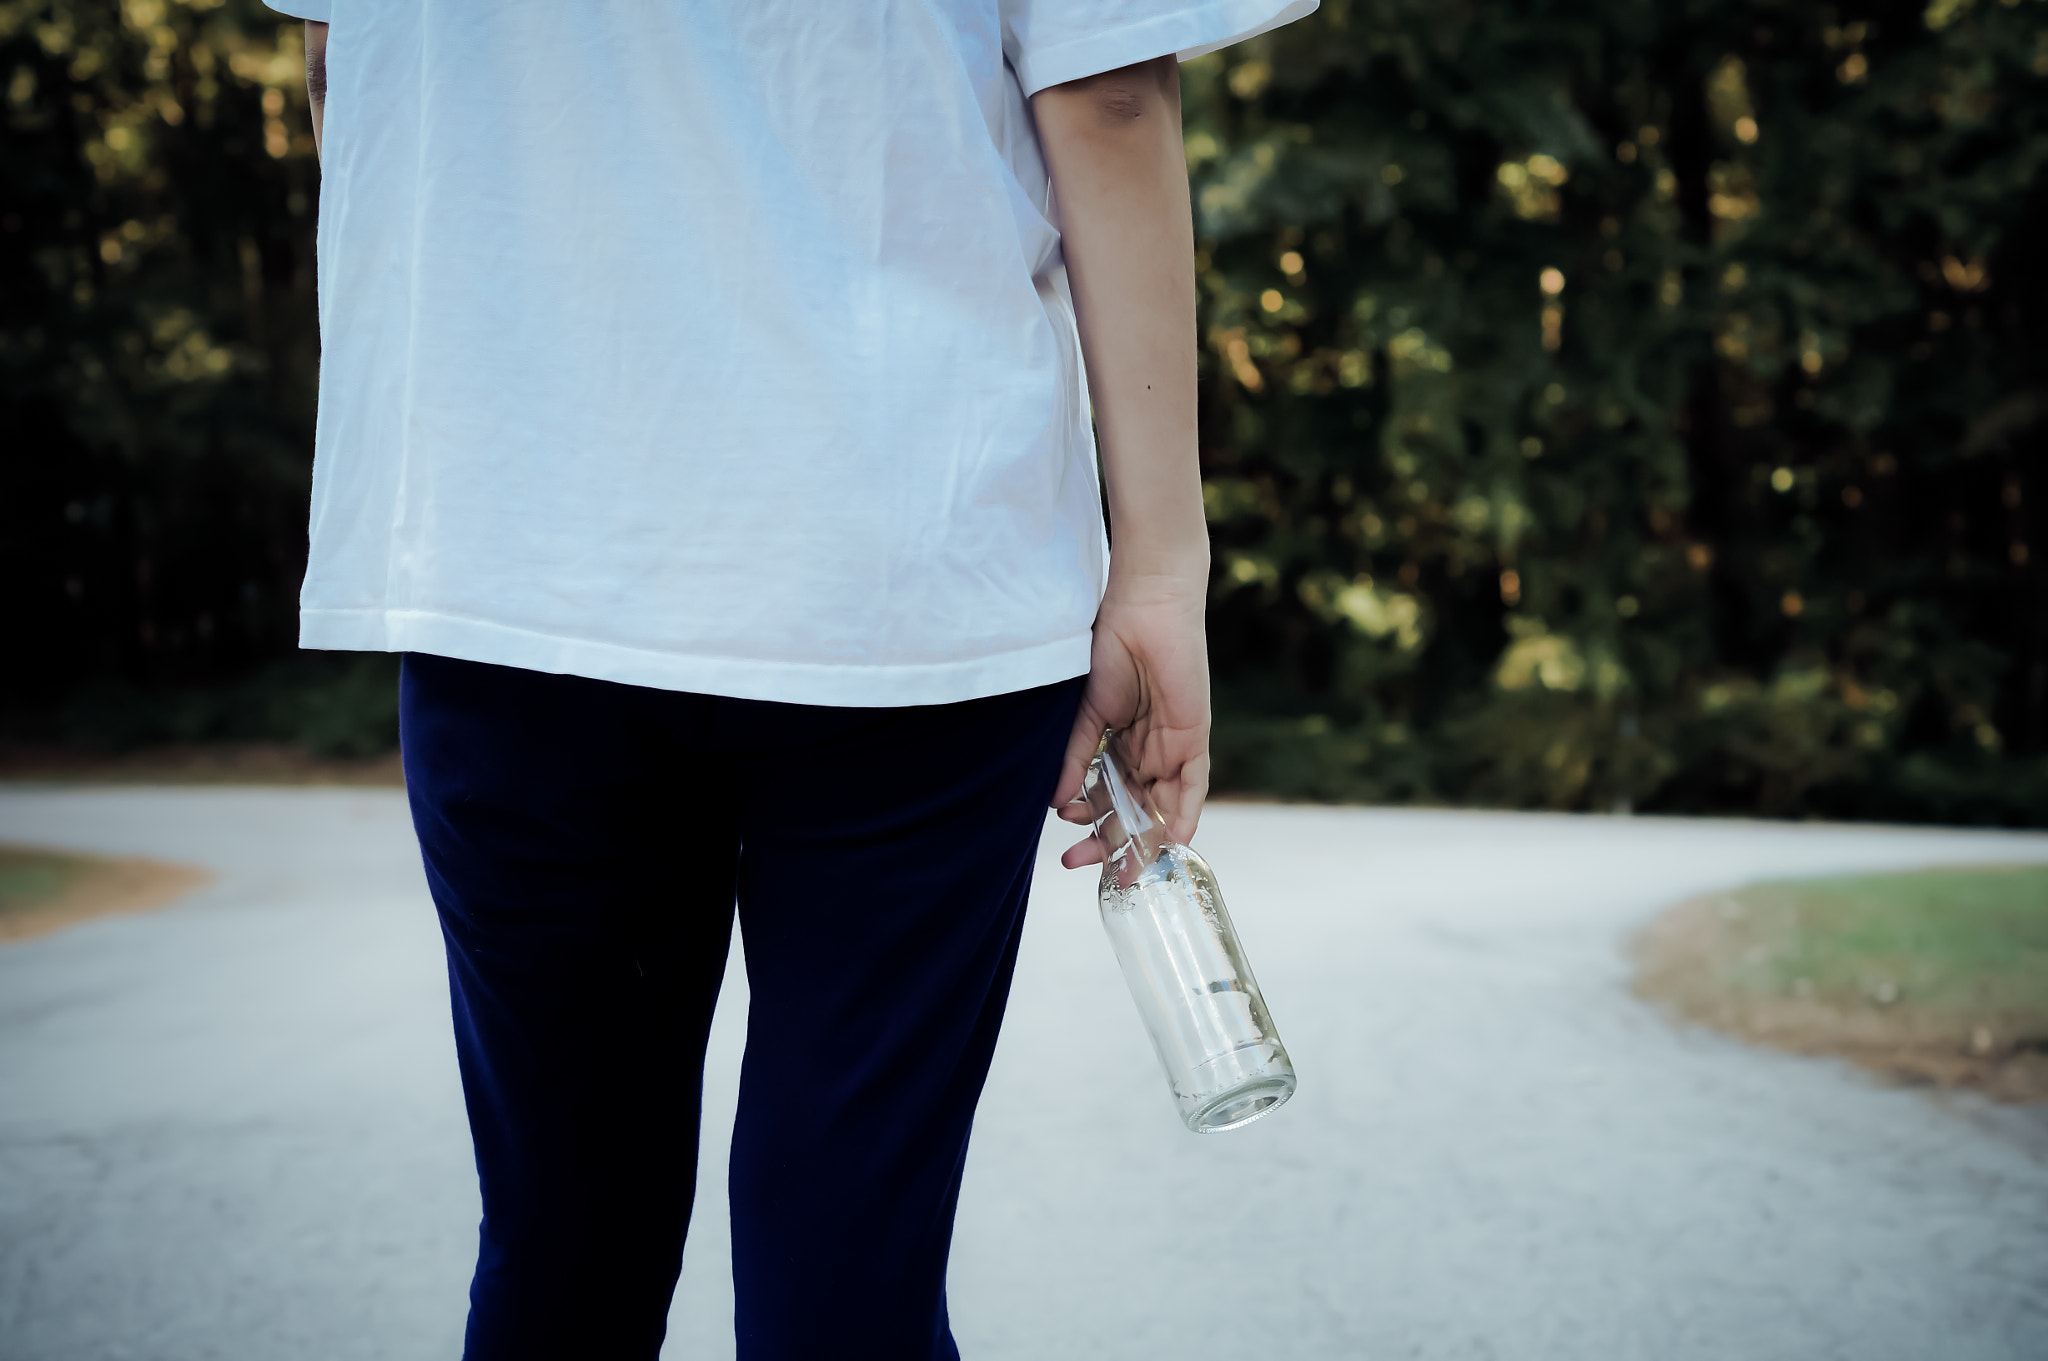 Teen girl with beer bottle